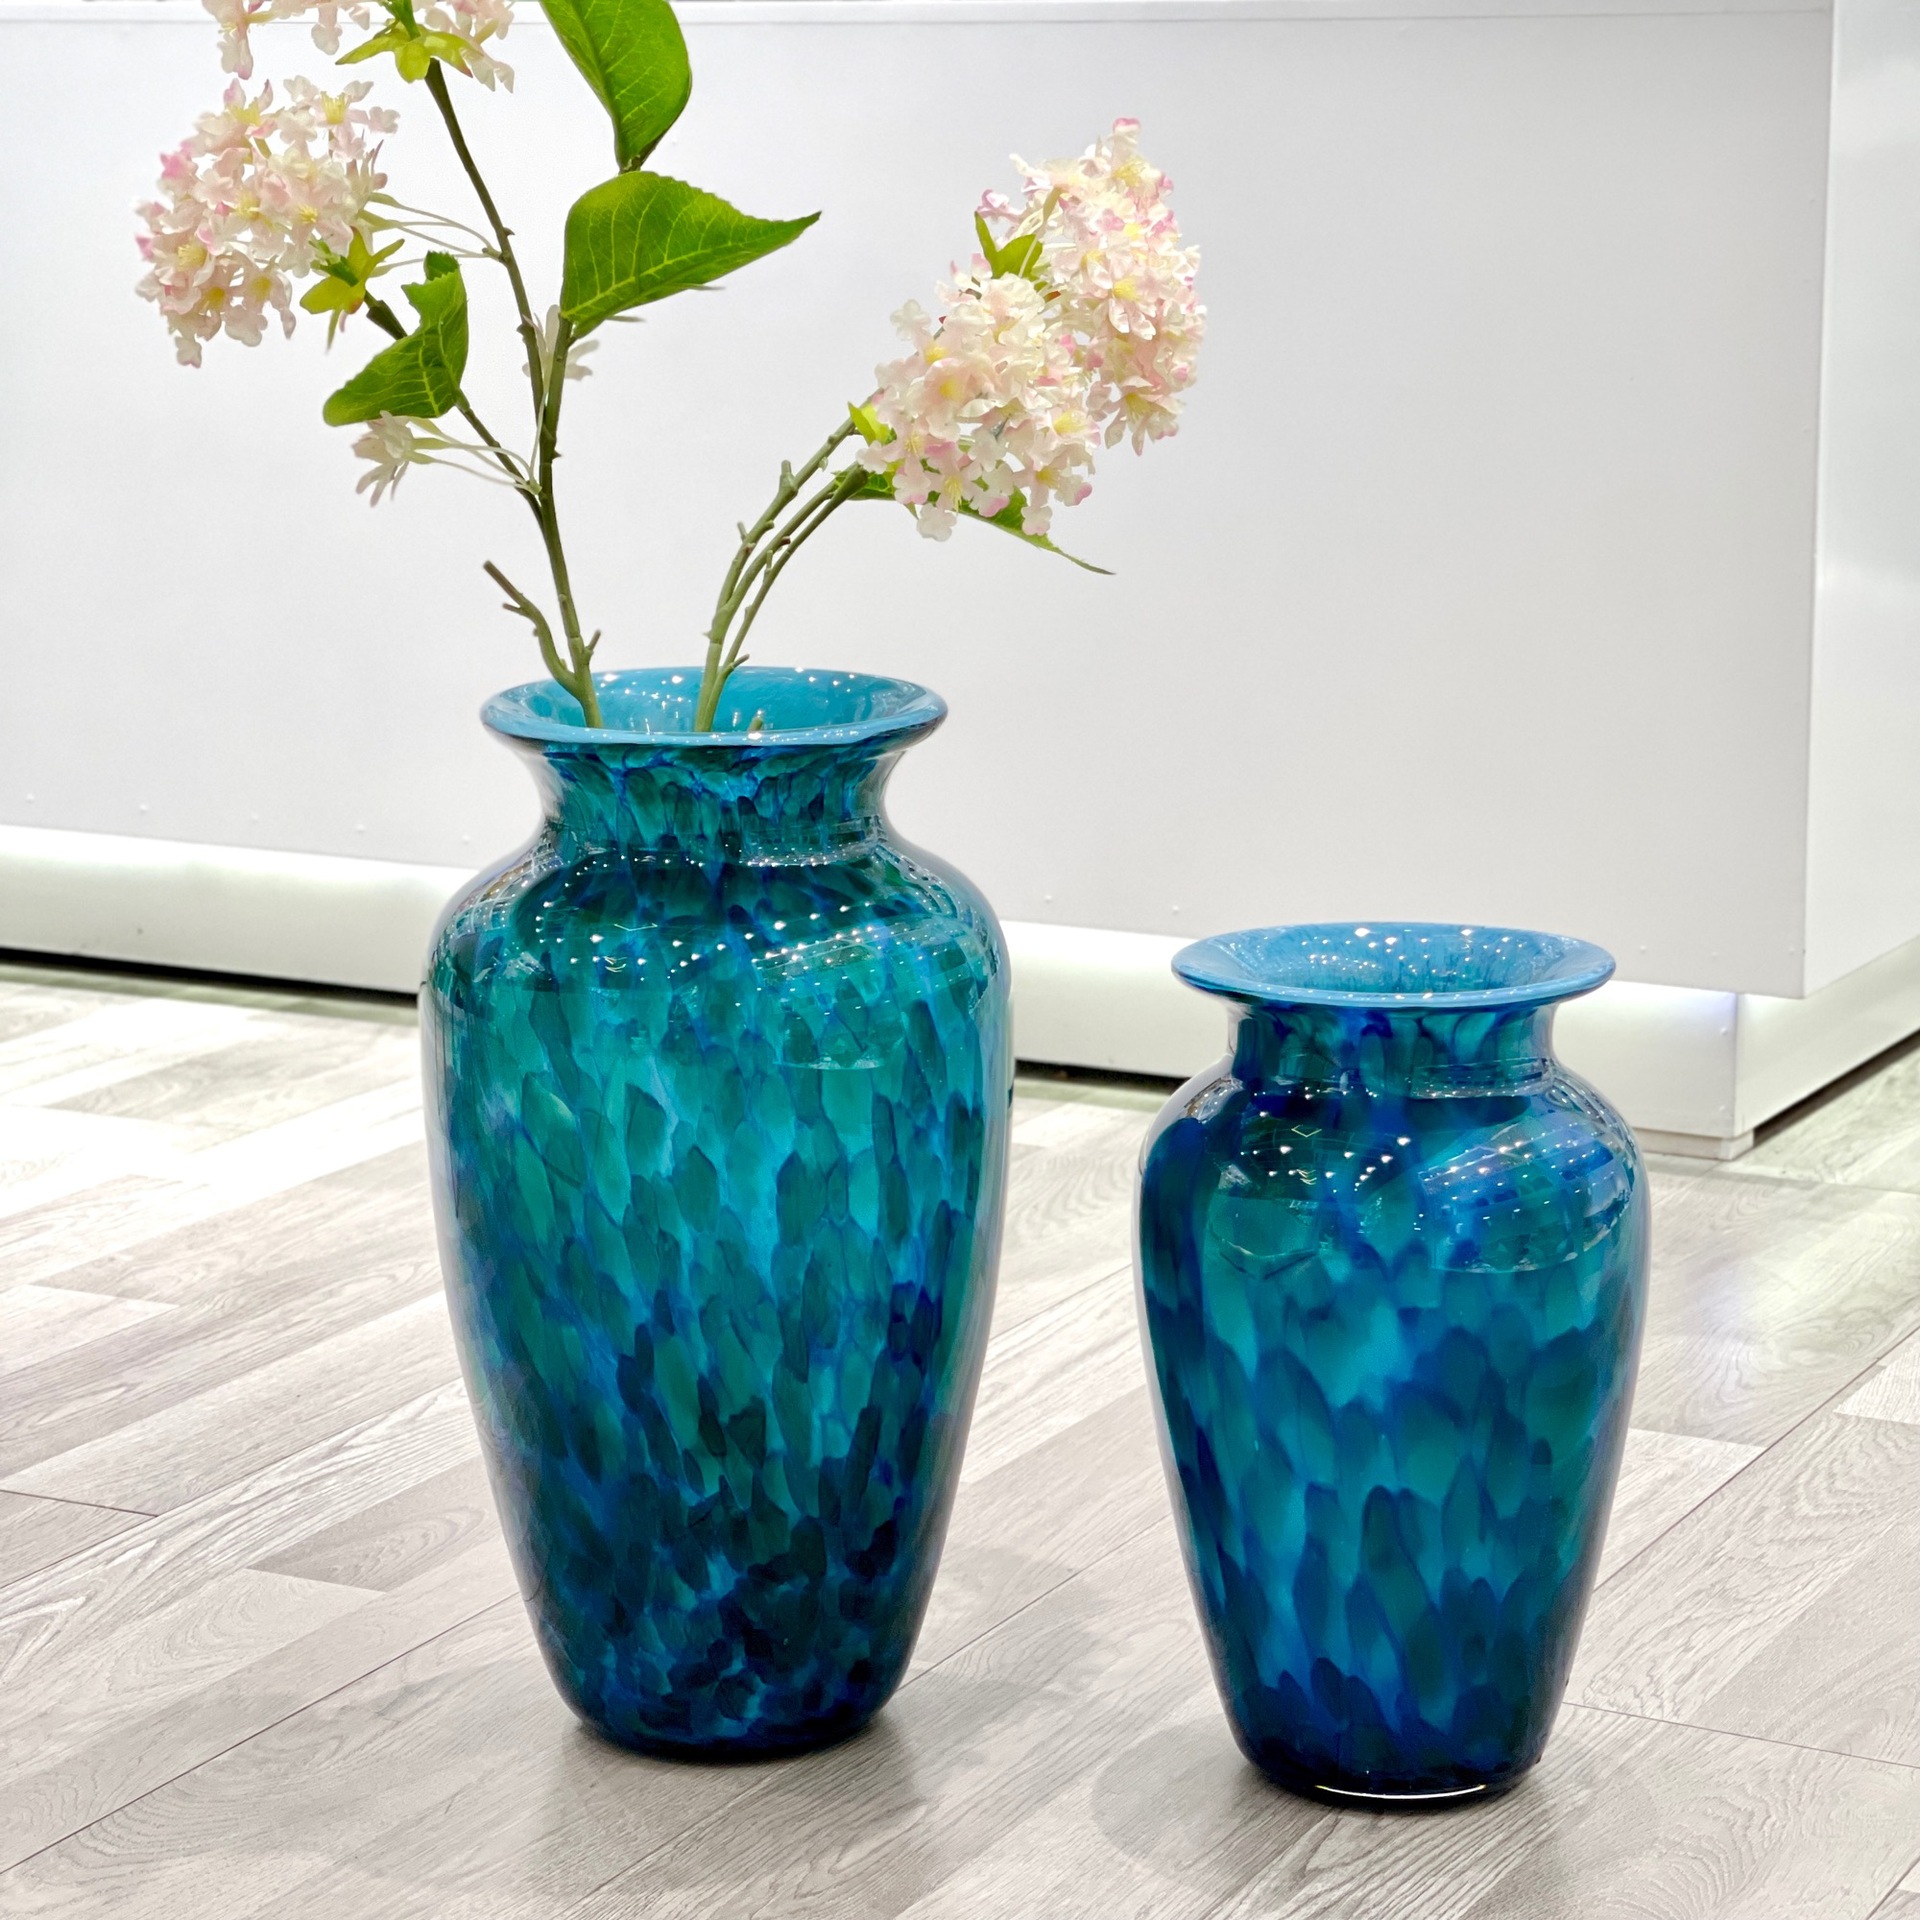 现代轻奢孔雀蓝厚重玻璃花瓶摆件客厅插花客厅玄关样板间琉璃花器